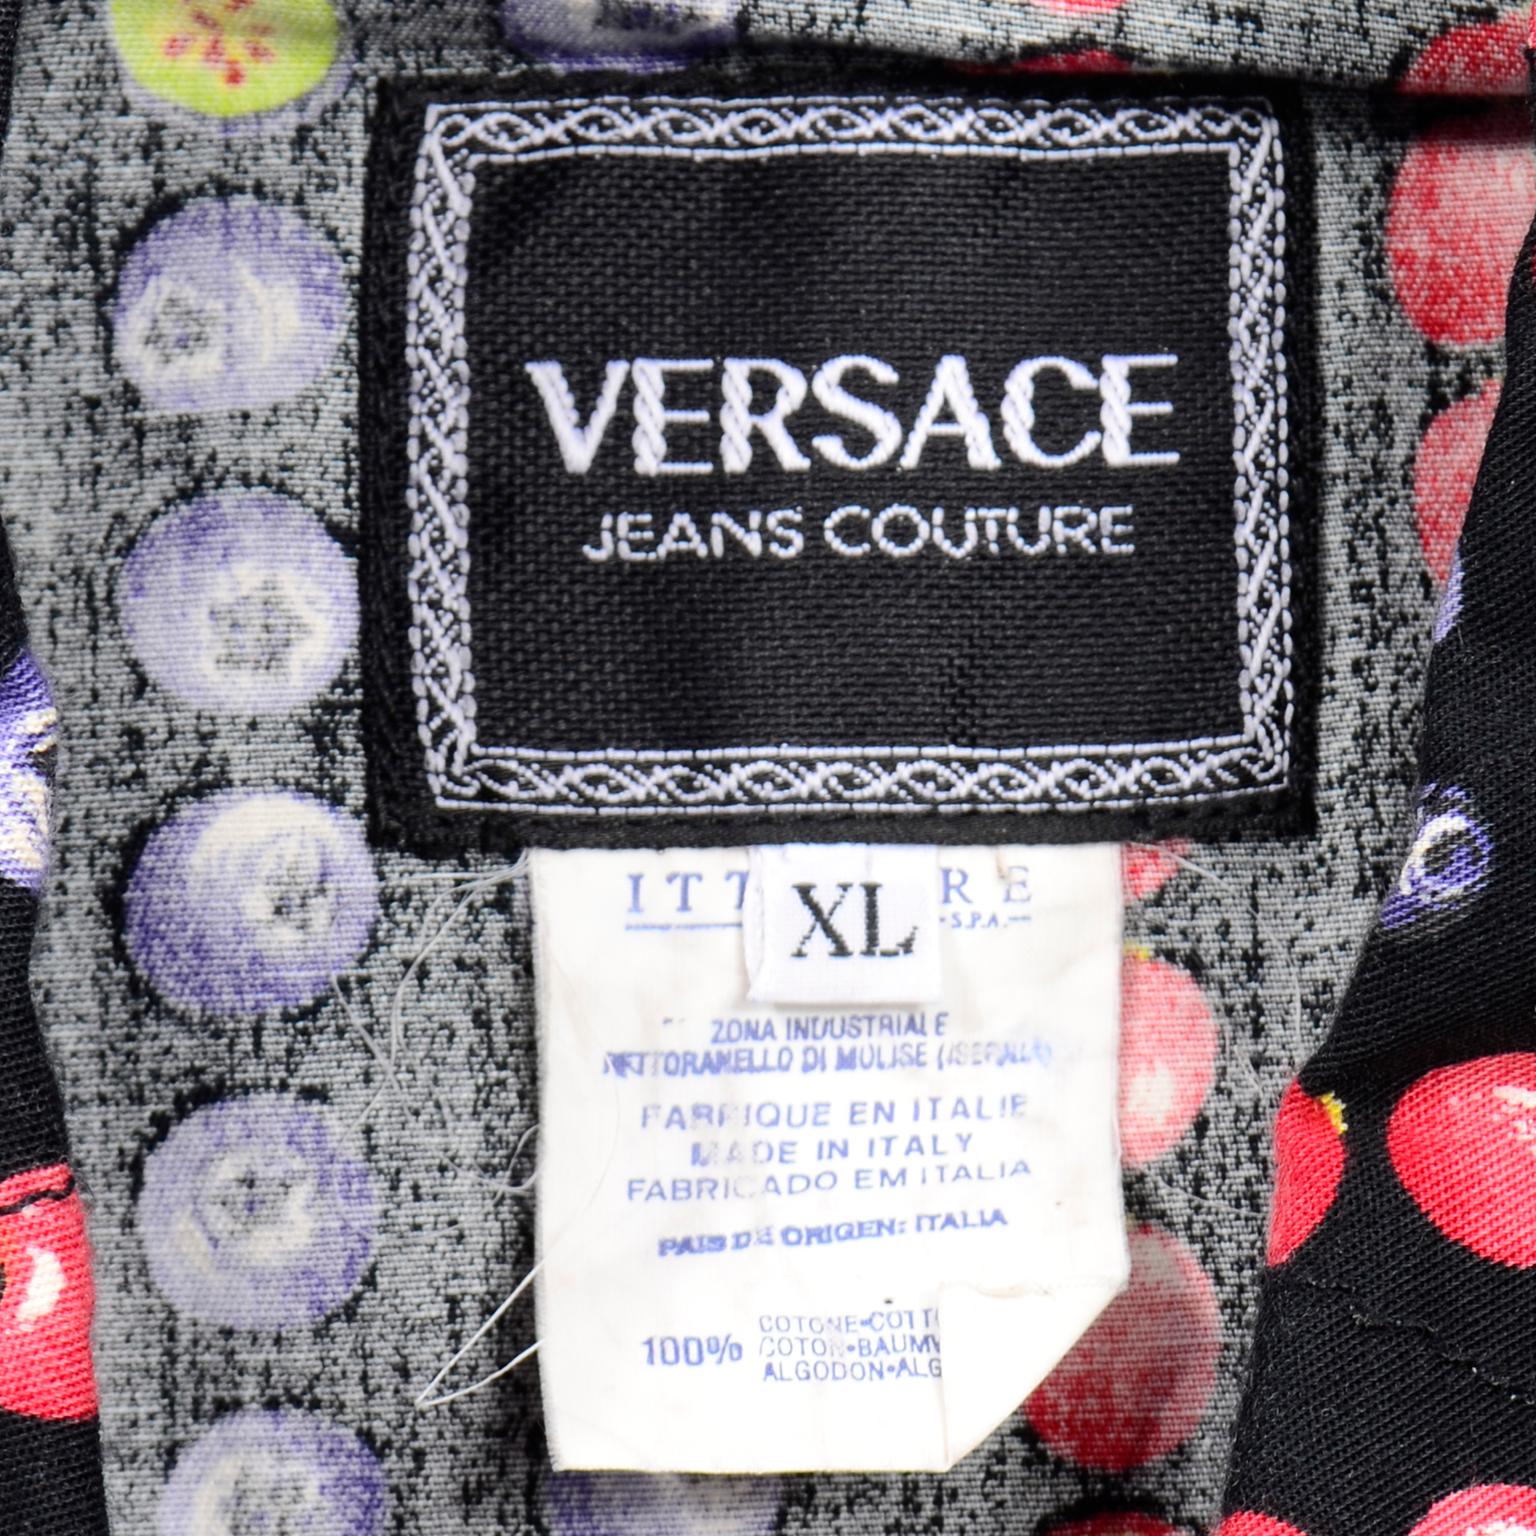 Gianni Versace Jeans Couture 1995 Multicolor Berries Fruit Vest w Medusa Buttons For Sale 4